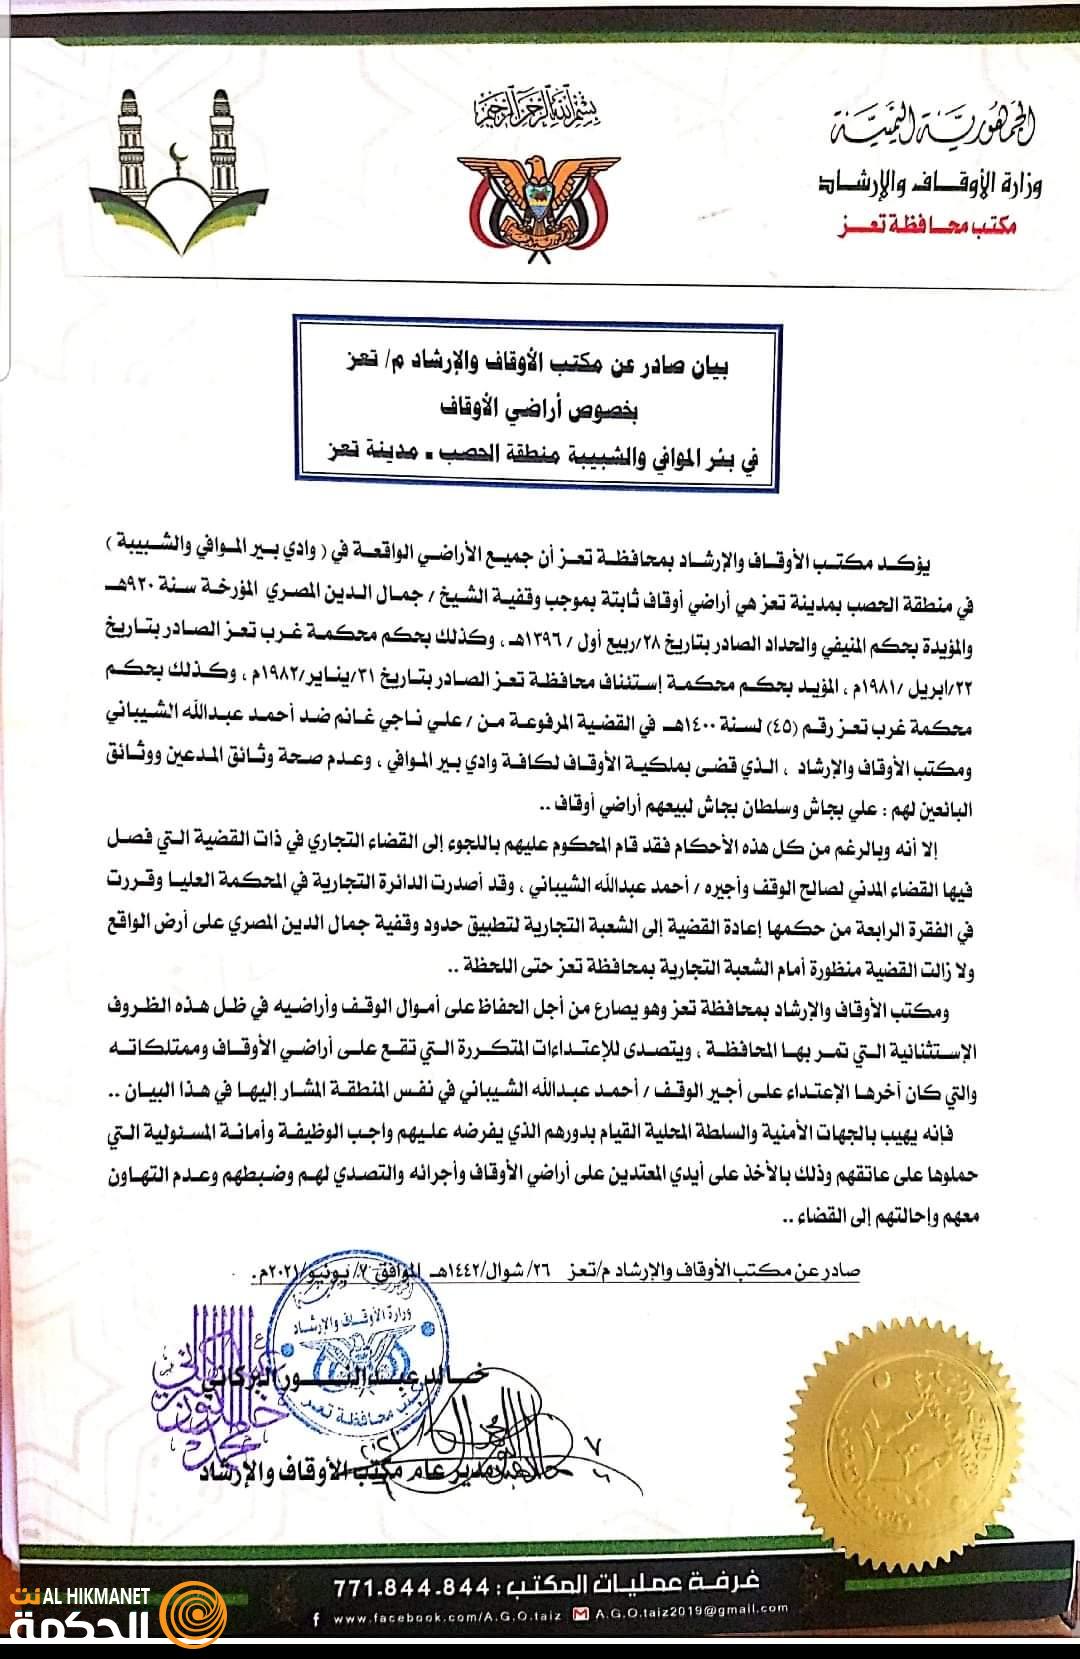 مكتب الأوقاف والإرشاد يصدر بيان بخصوص أراضي الوقف في وادي بير الموافي في منطقة الحصب مدينة تعز :